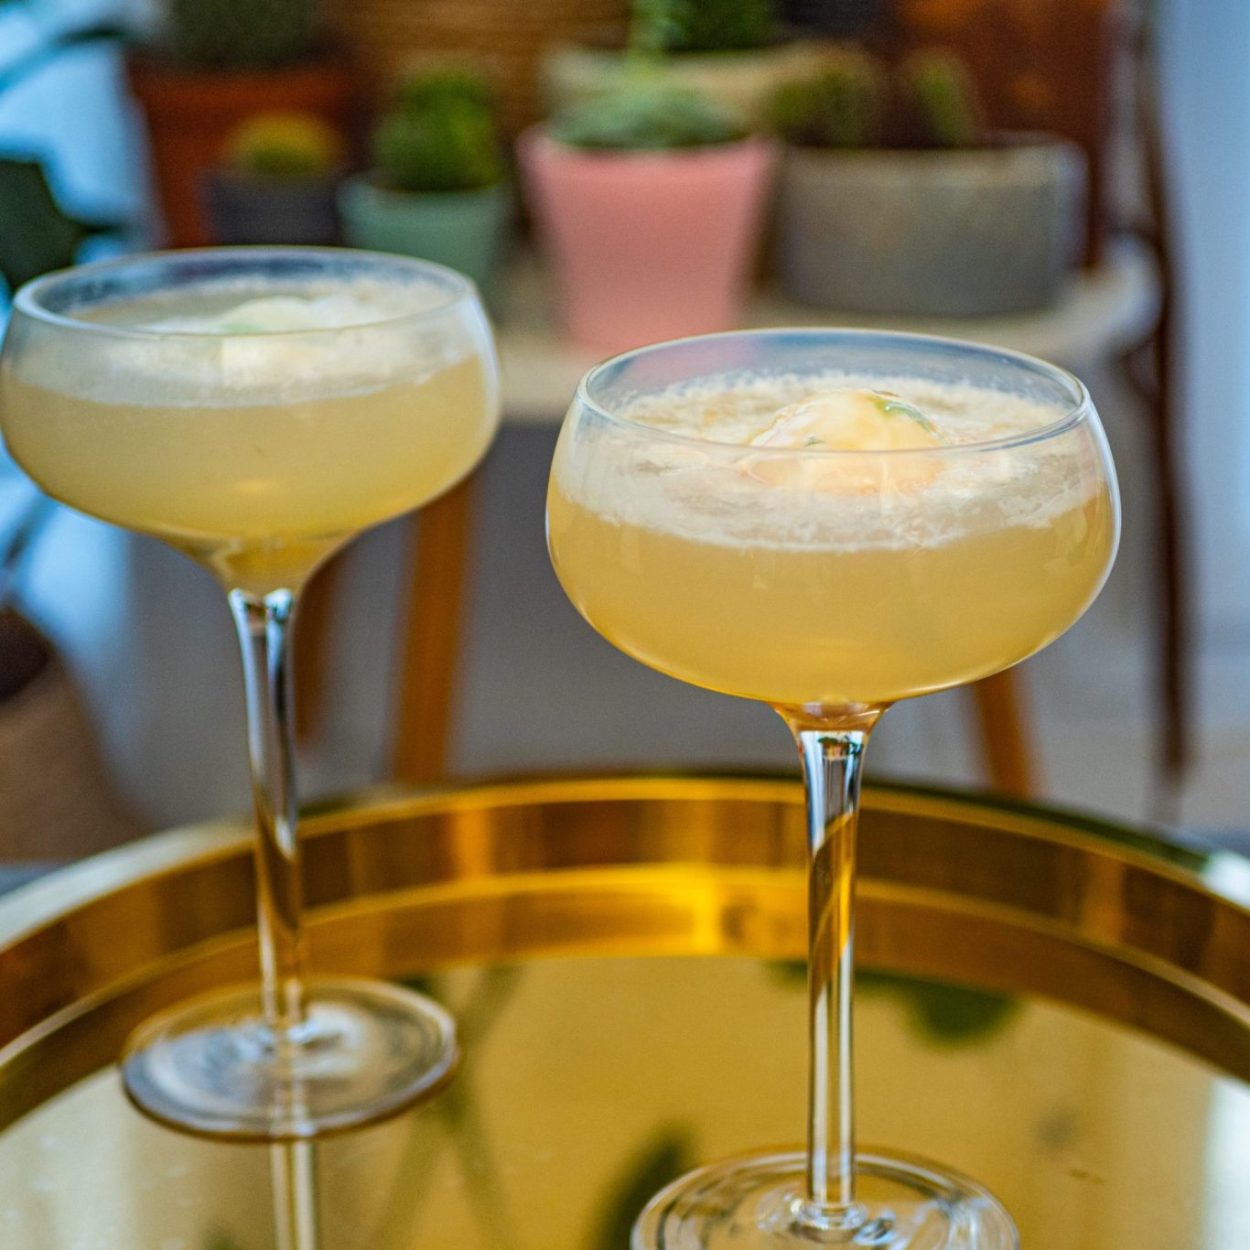 Terremoto - Cocktail au vin blanc et glace à l'ananas - Recette chilienne